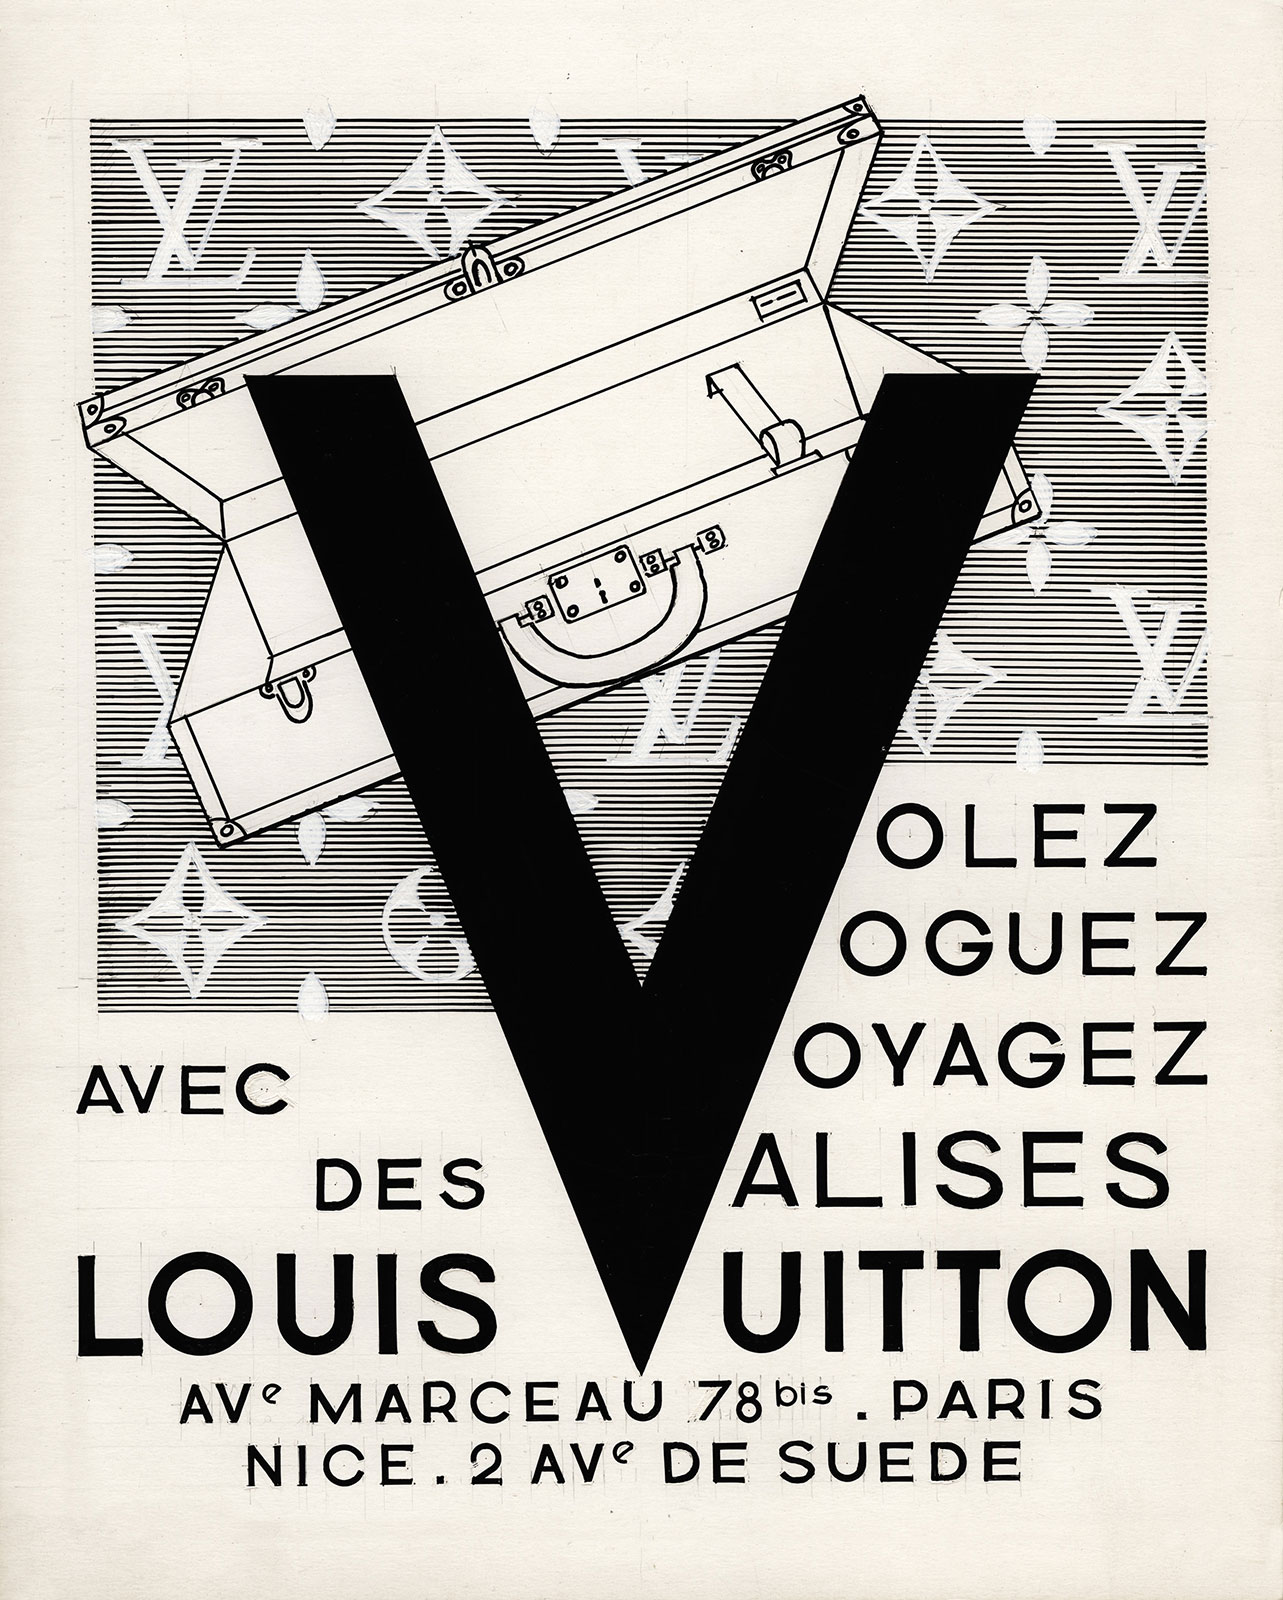 Decor Louis Vuitton Volez Voguez Voyagez Exhibition Poster - Blue Wall  Decor, Decor & Accessories - DECOR37220